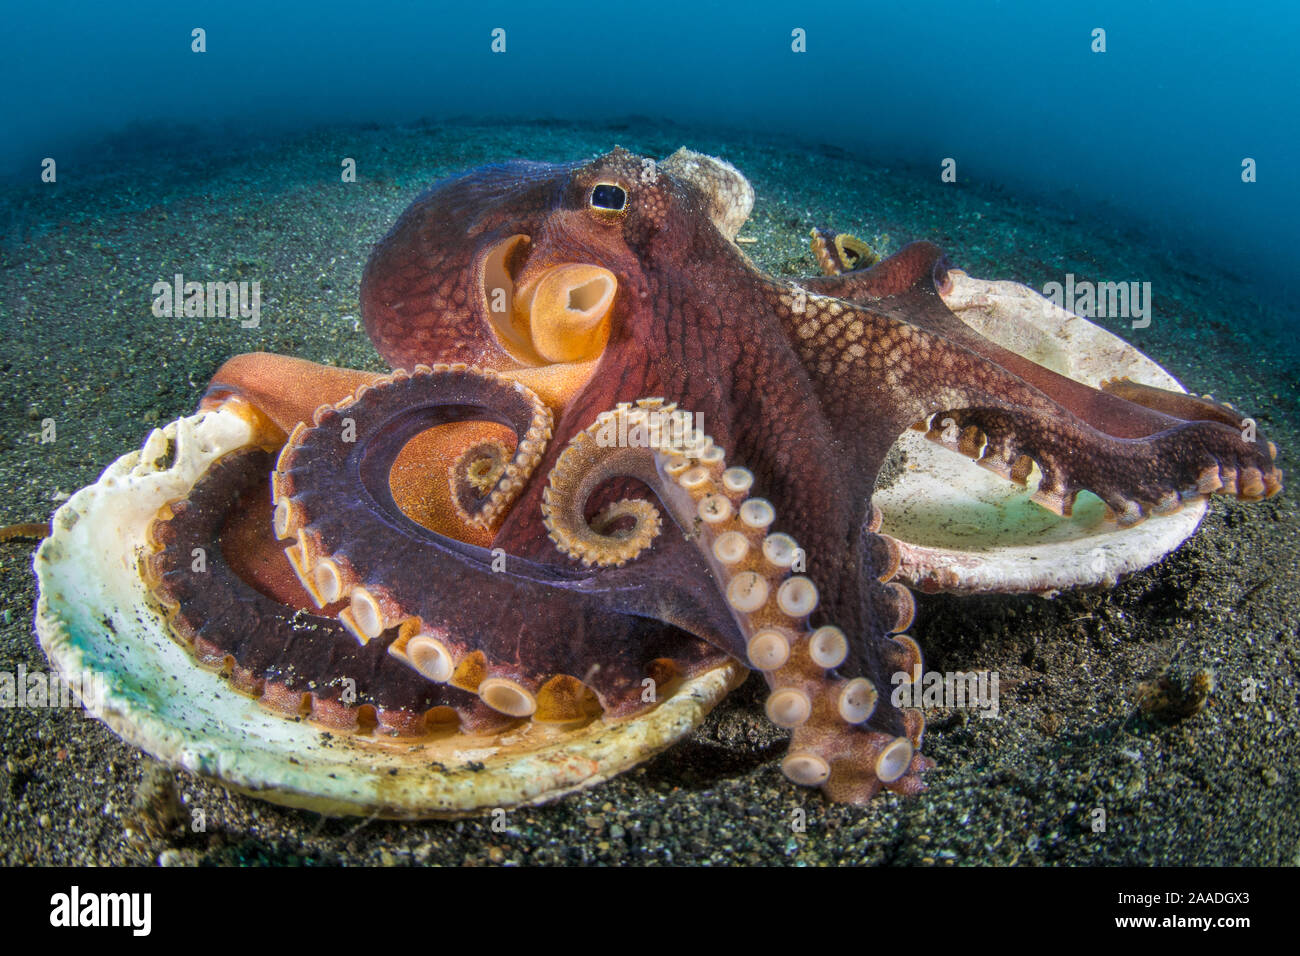 Geädert Octopus (Amphioctopus Marginatus), die auf der Oberseite der beiden Hälften eines alten clam Shell auf dem sandigen Meeresgrund. Diese Octopus regelmäßig Stücke von Shell, um Sie als schützende Rüstung verwenden kann, wenn erforderlich. Bitung, Nord Sulawesi, Indonesien. Lembeh Strait, Molukken Meer. Stockfoto